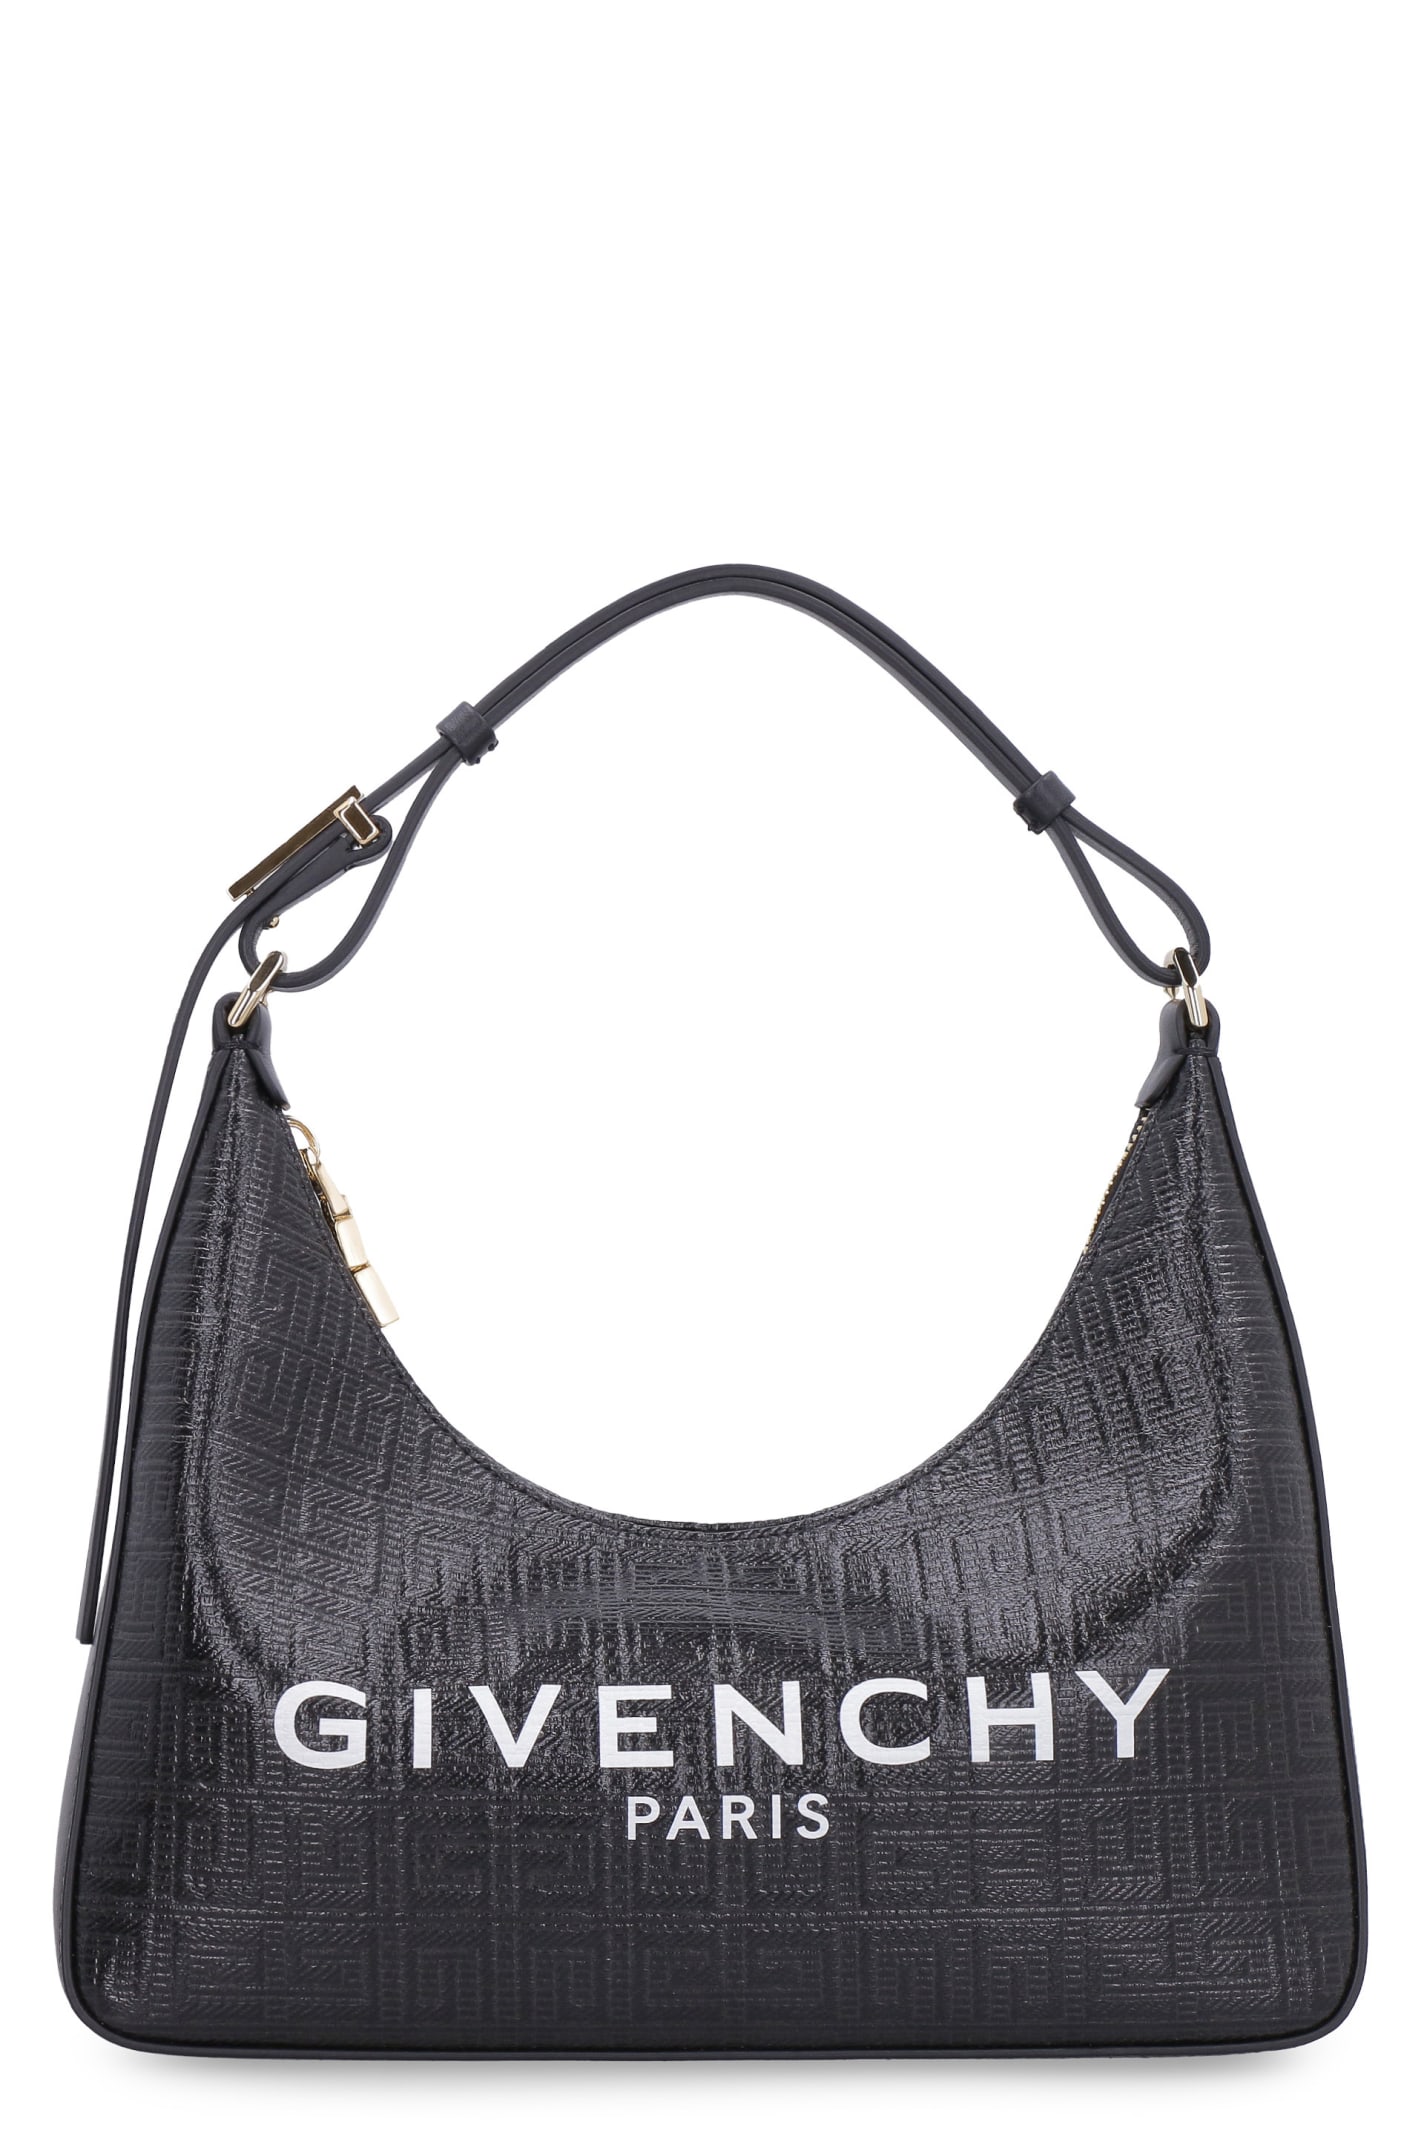 Givenchy Moon Cut Out Handbag